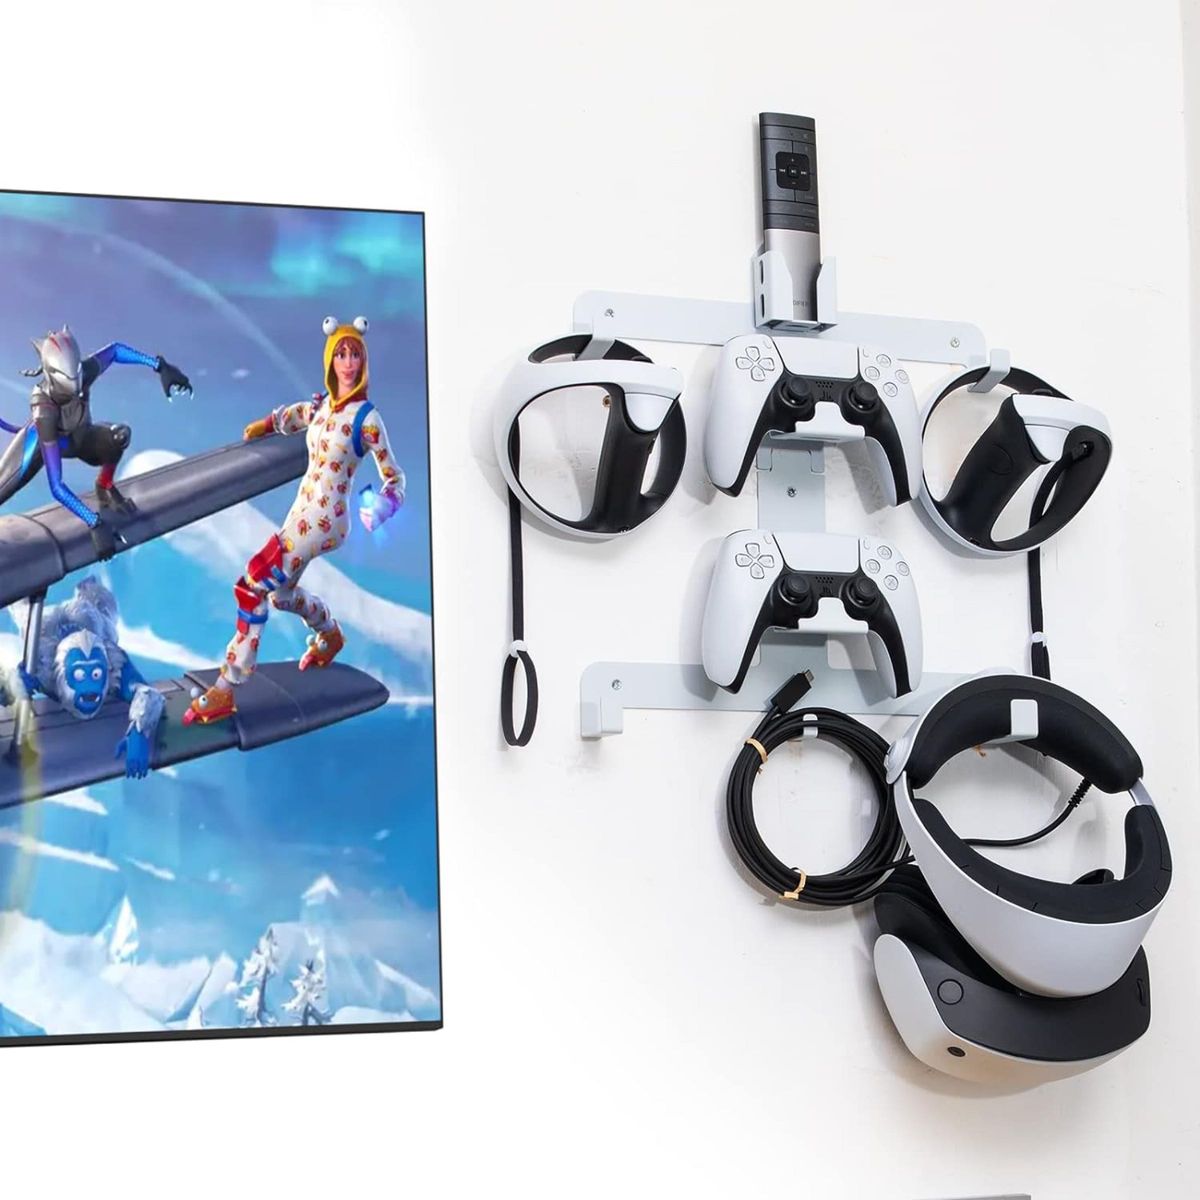 PS VR2 壁取り付けキット オールインワン ソリッドメタル壁取り付けキット VR2ヘッドセット PS VR2コントローラー